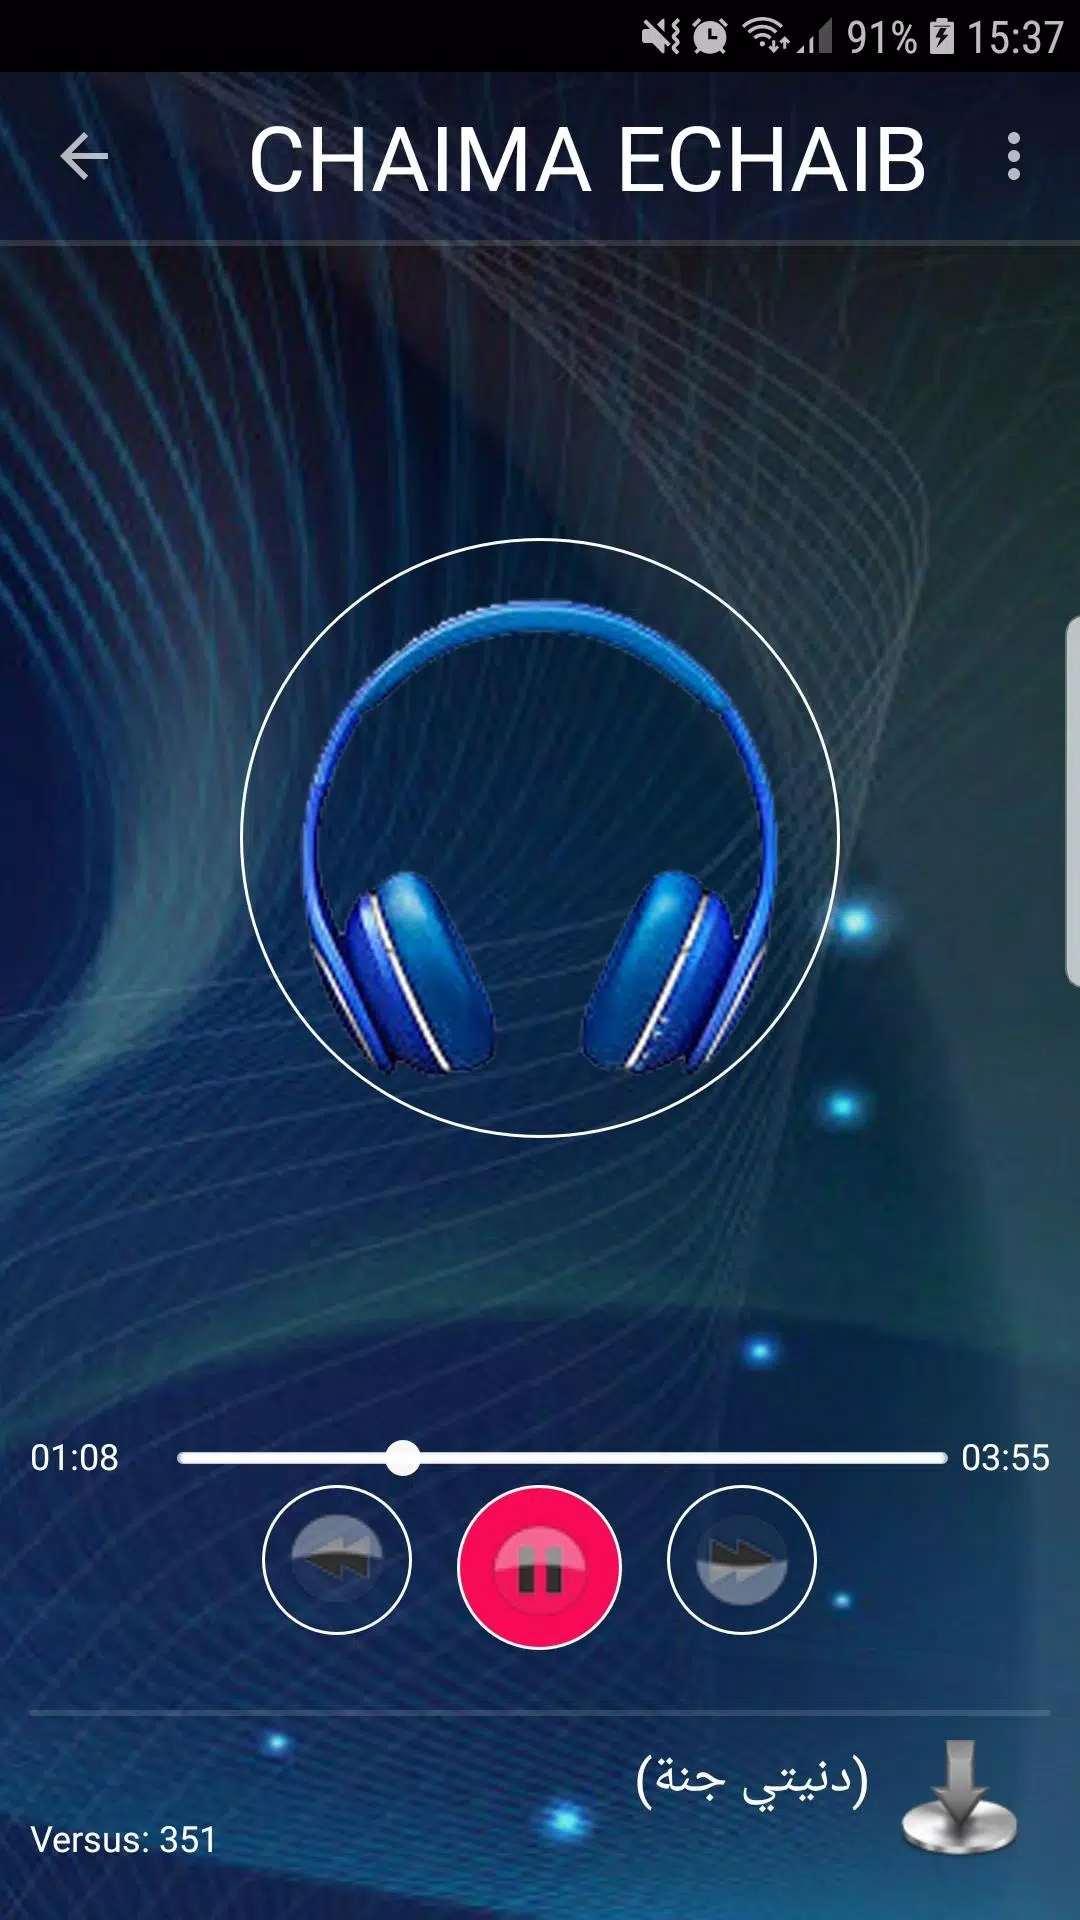 أغاني شيماء الشايب 2019 بدون نت - chaima chayeb APK for Android Download